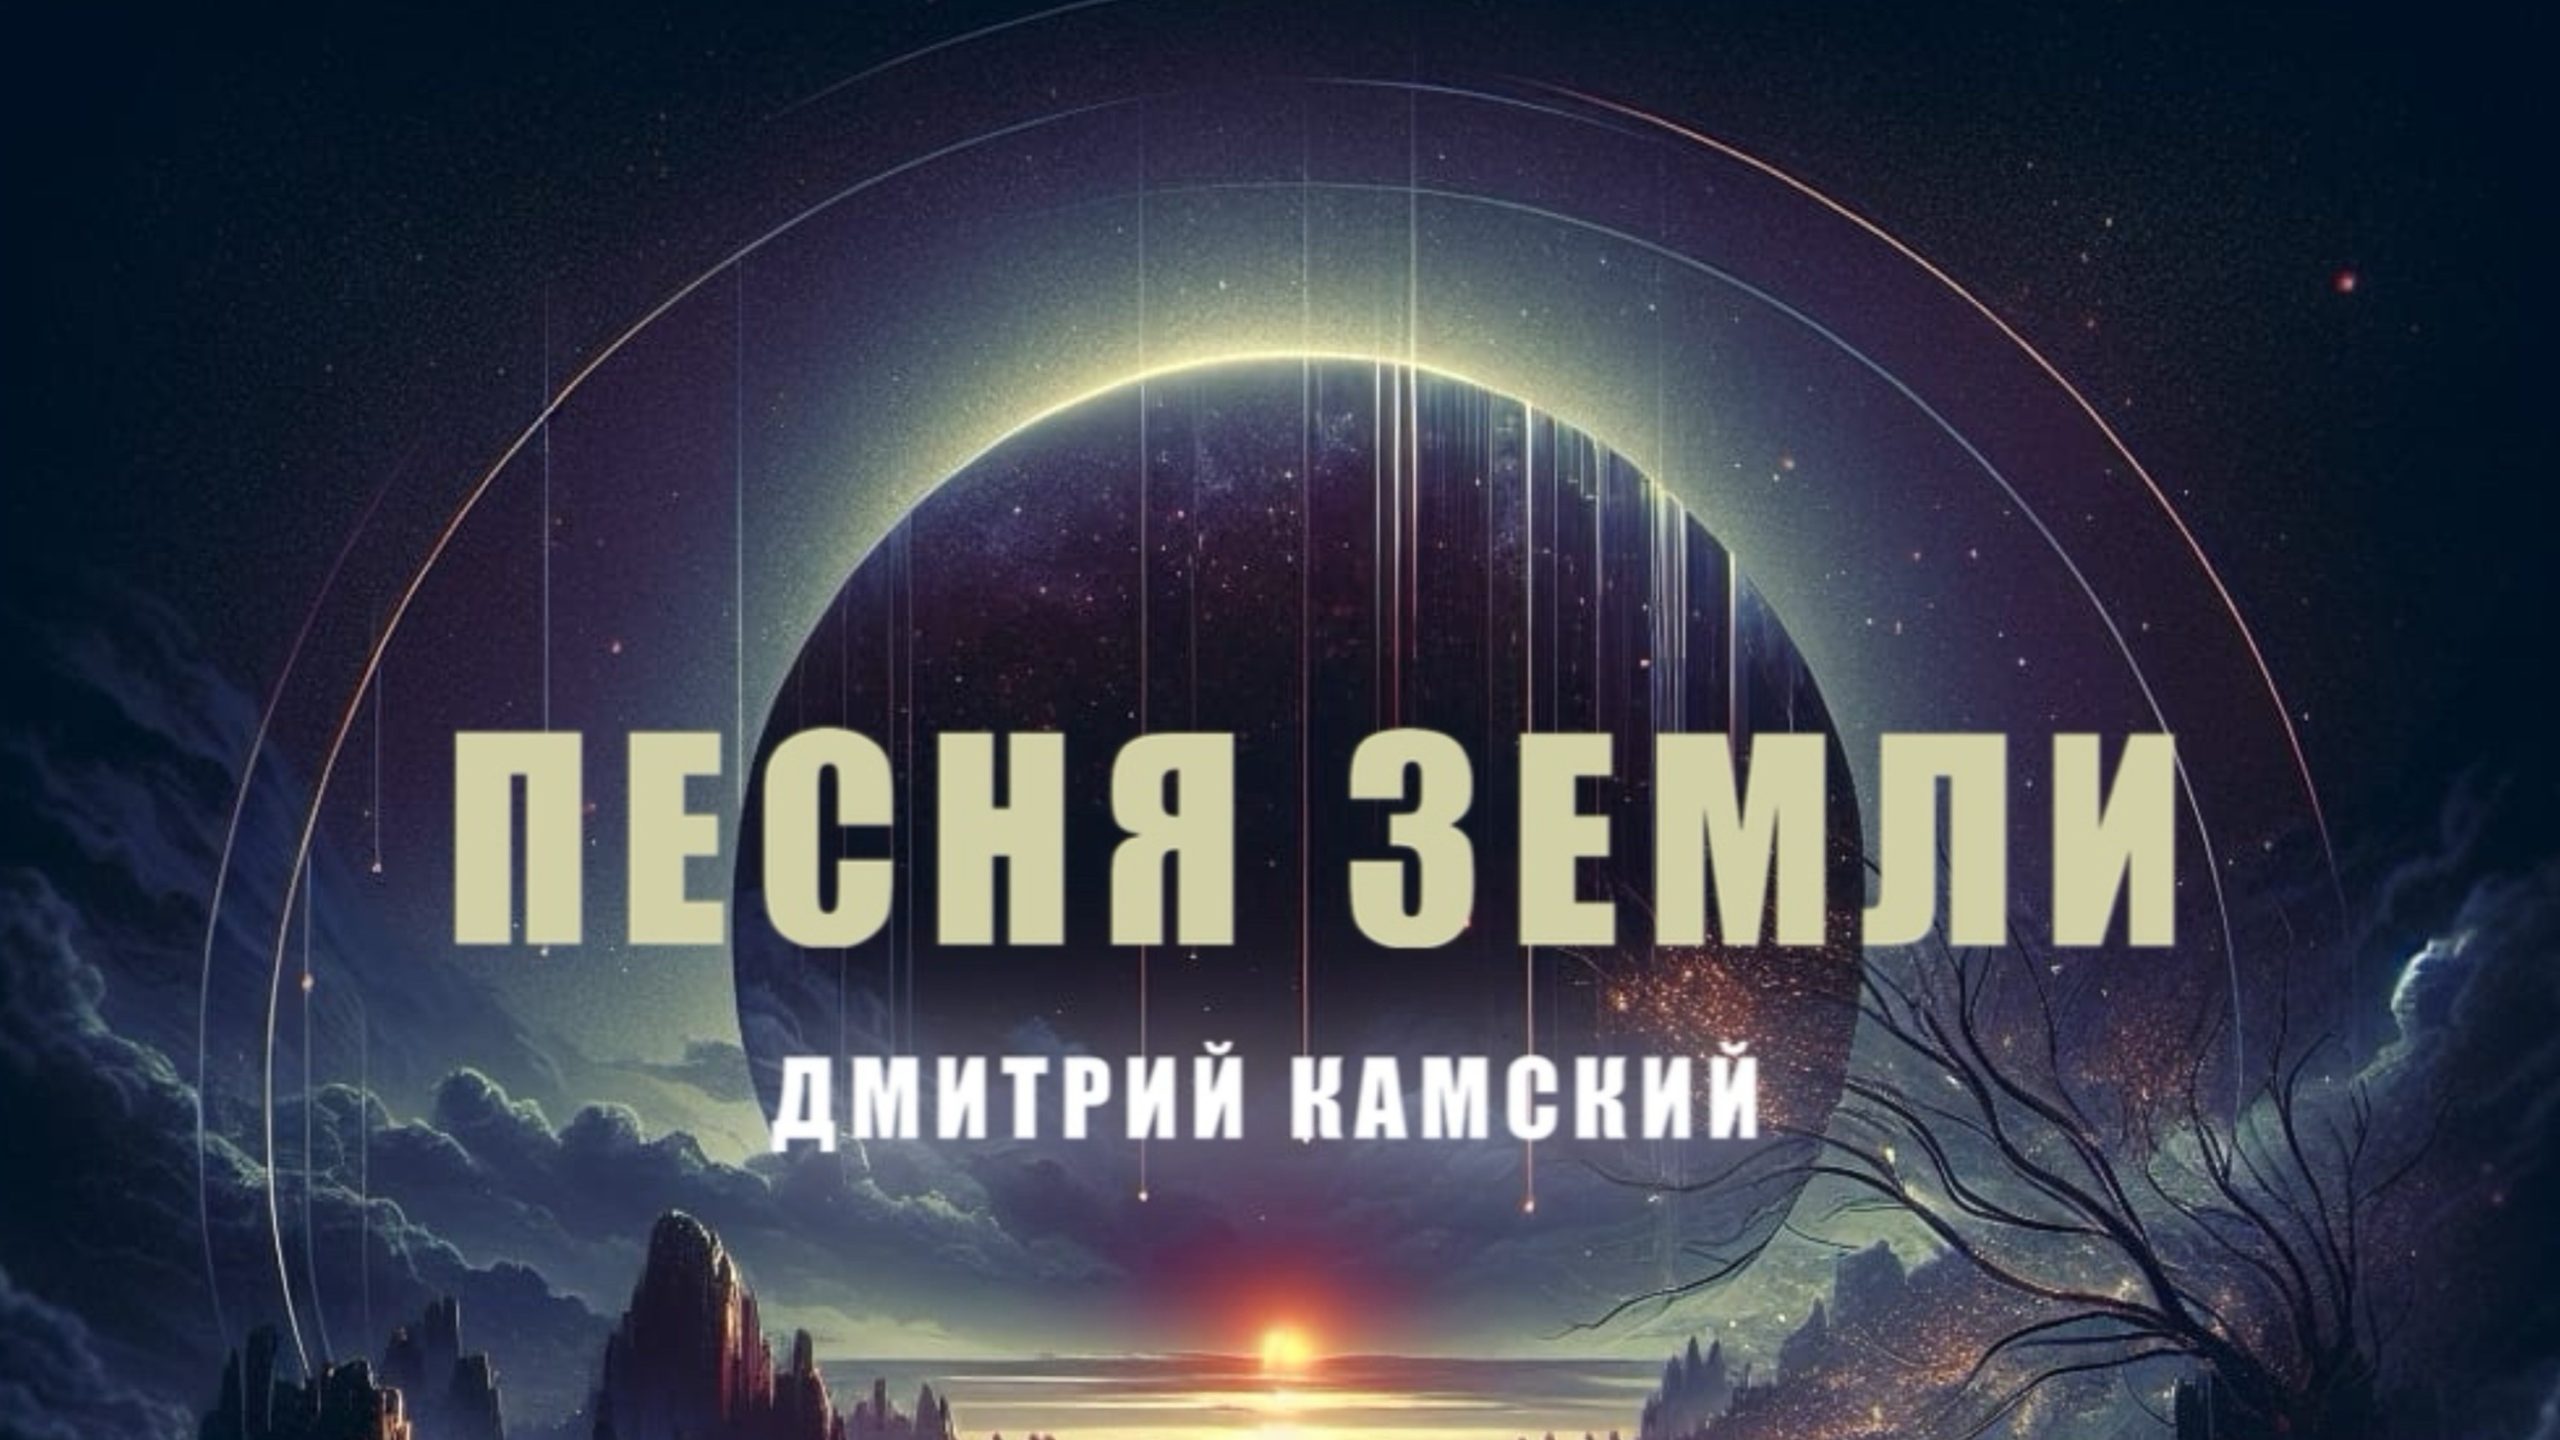 Певец Дмитрий Камский готовит к релизу новый сингл "Песня Земли"